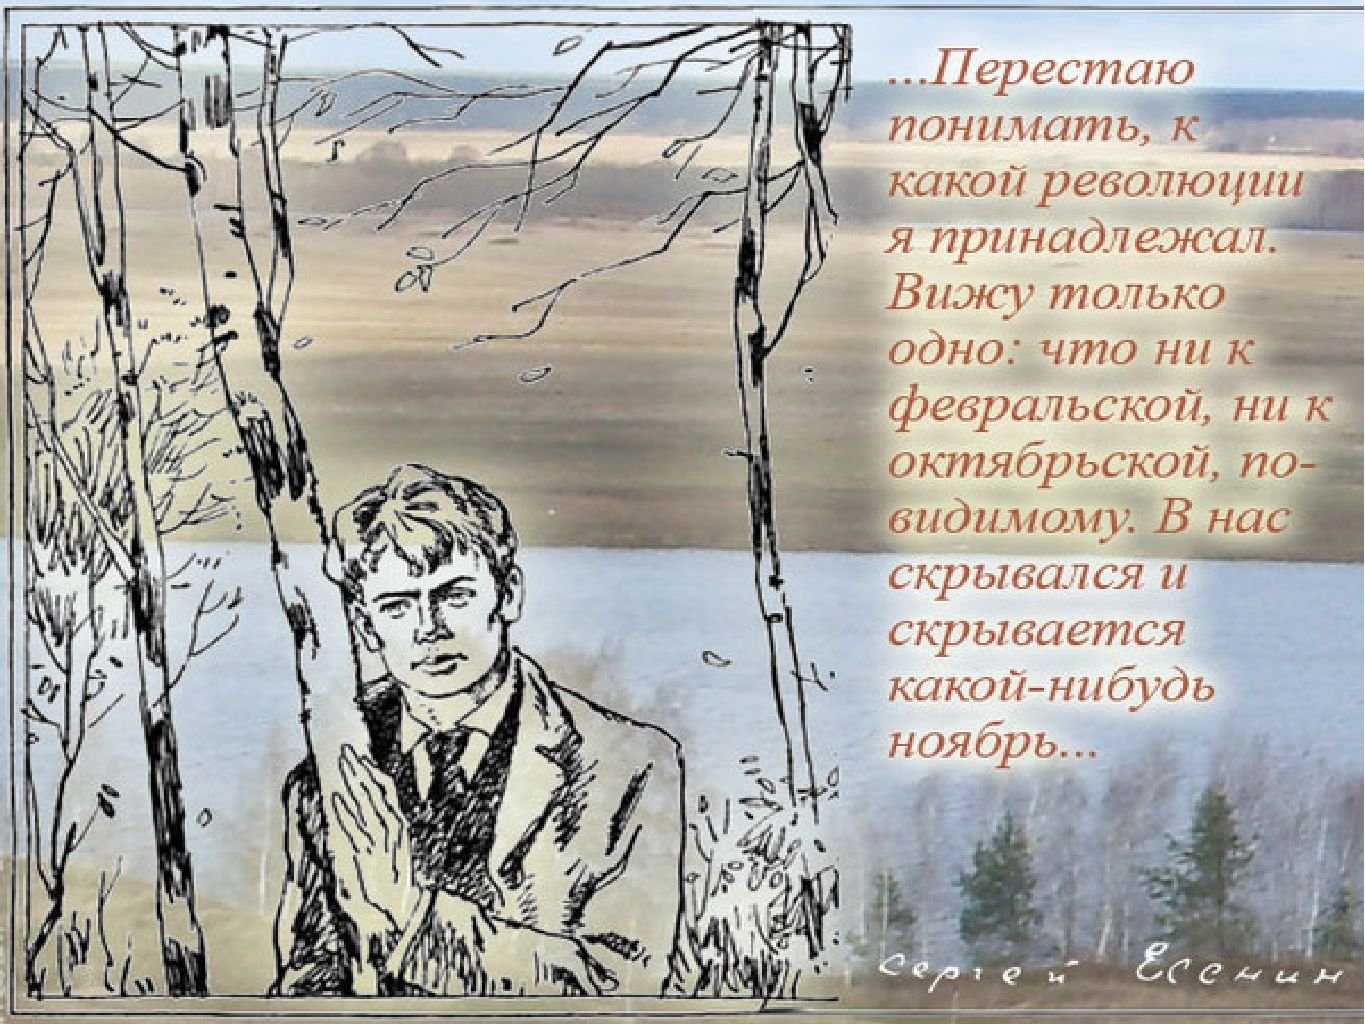 Сергей Есенин иллюстрации к стихам